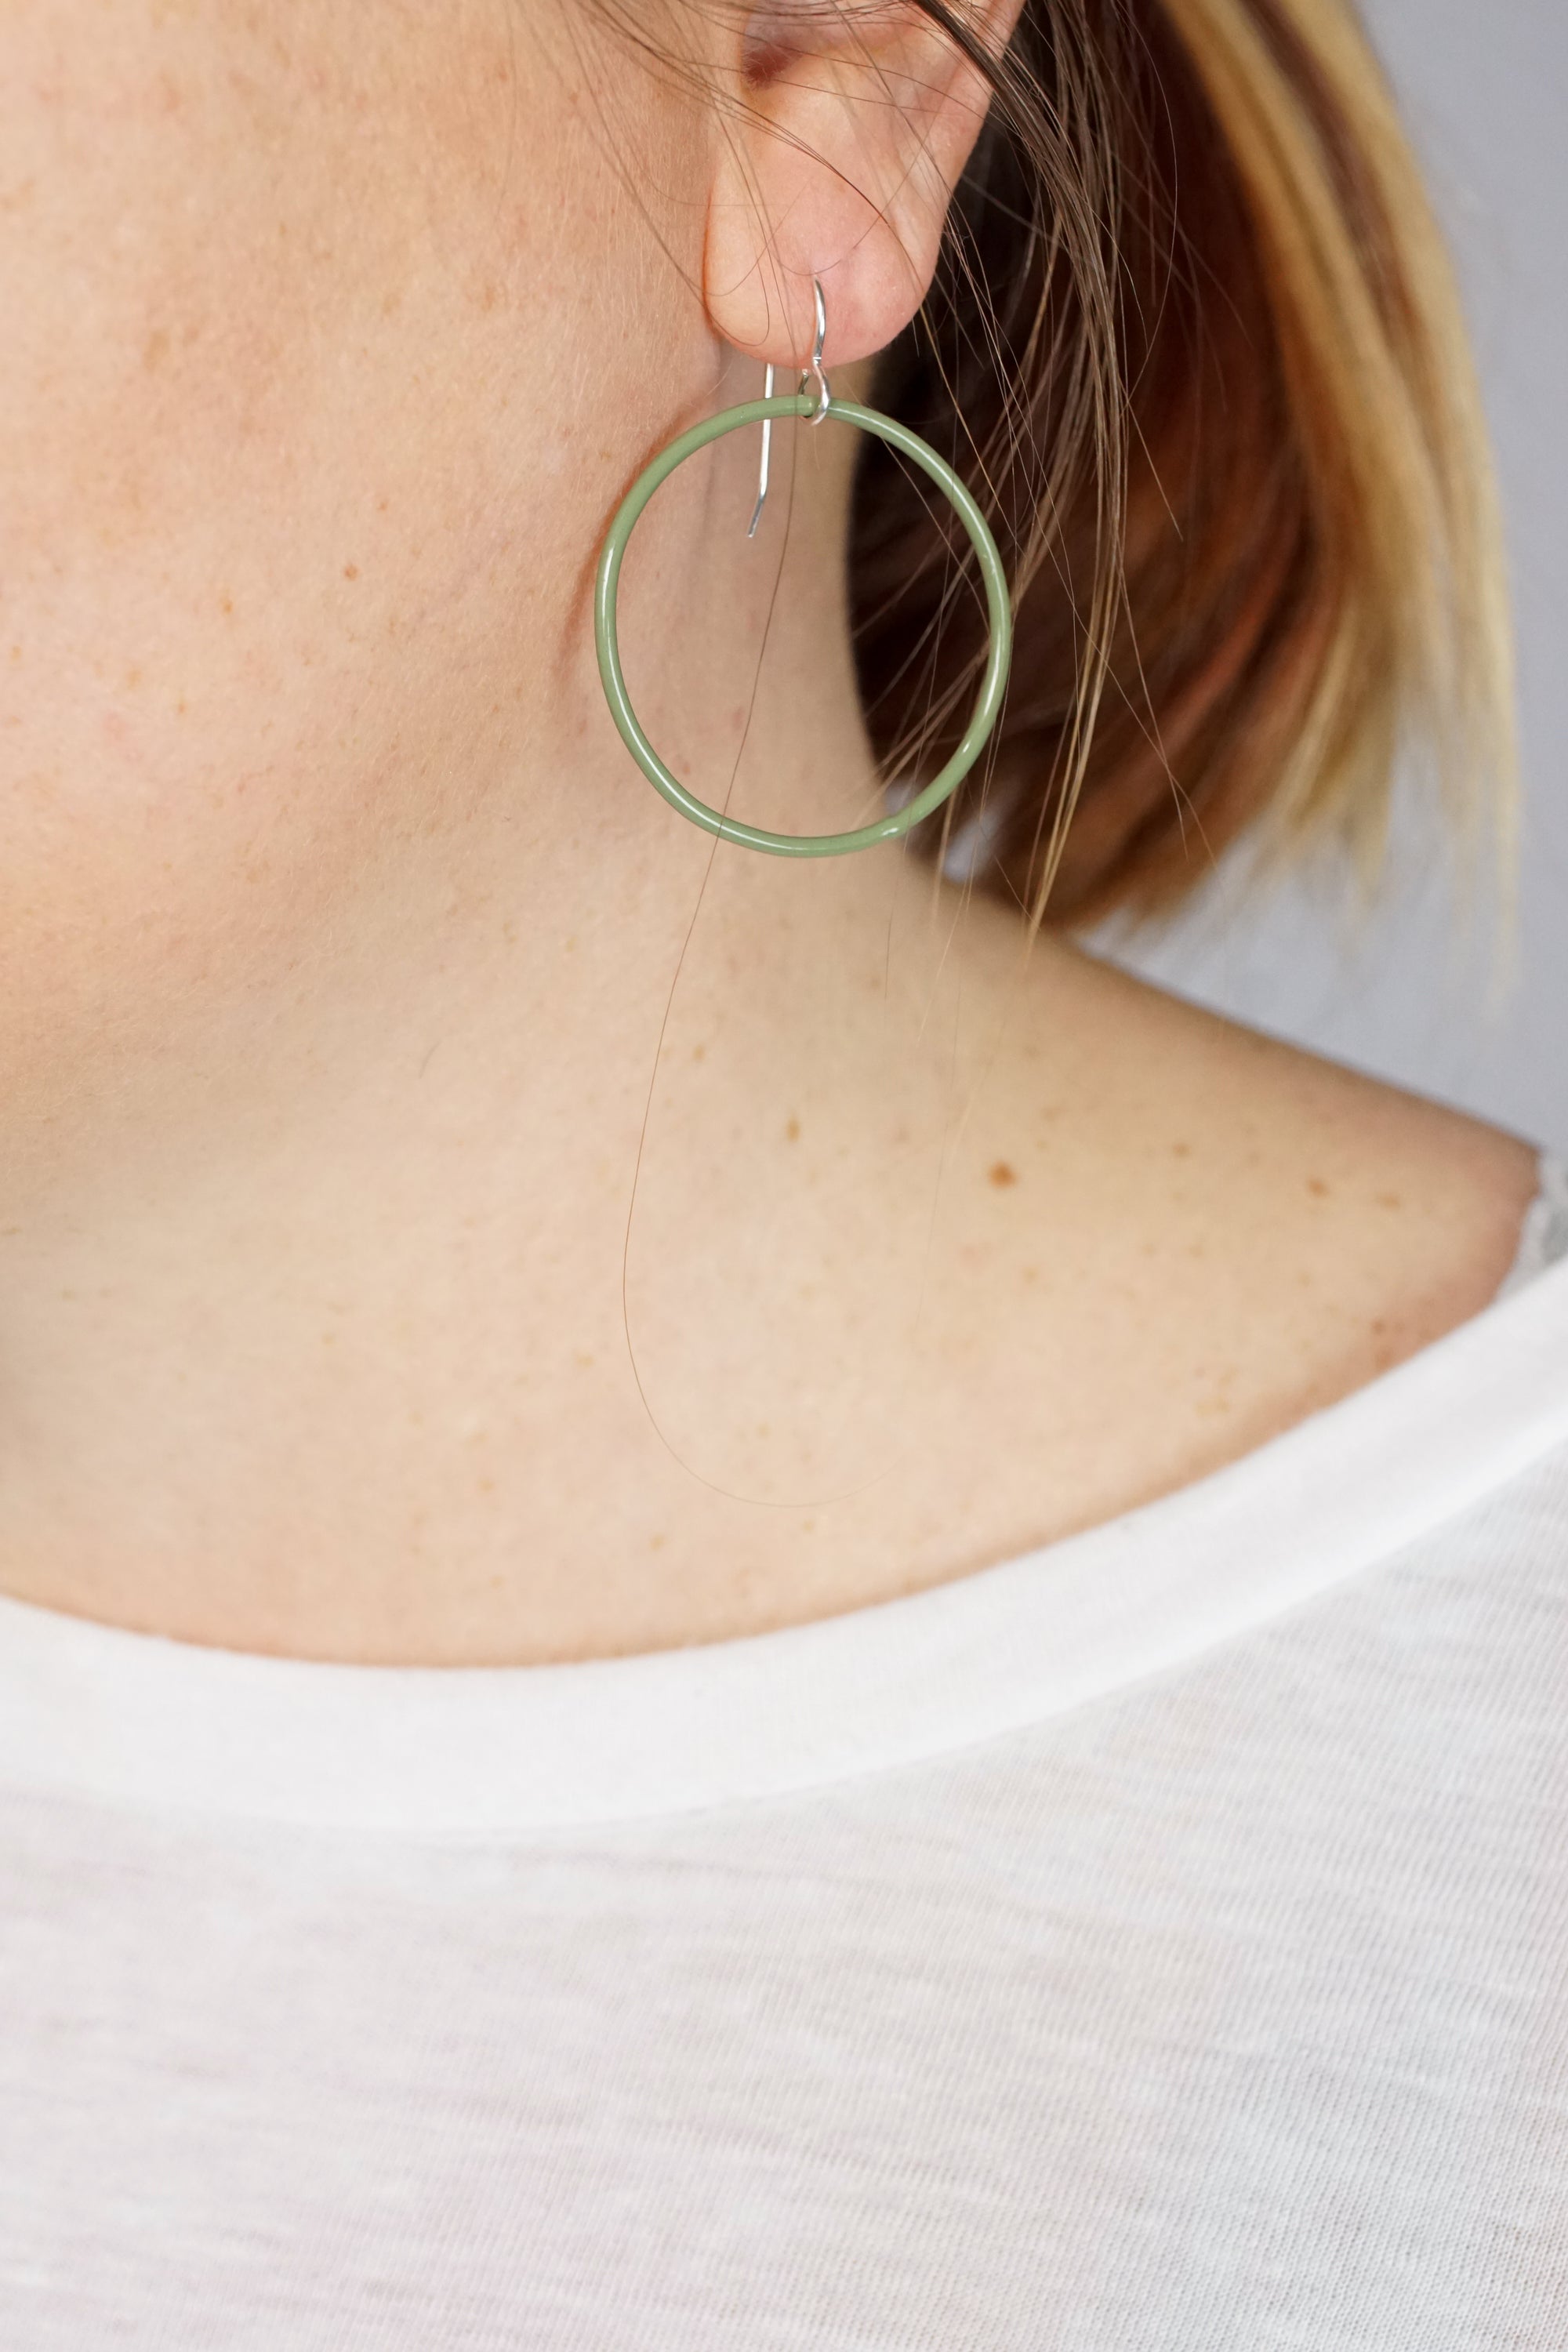 Medium Evident Earrings in Olive Green